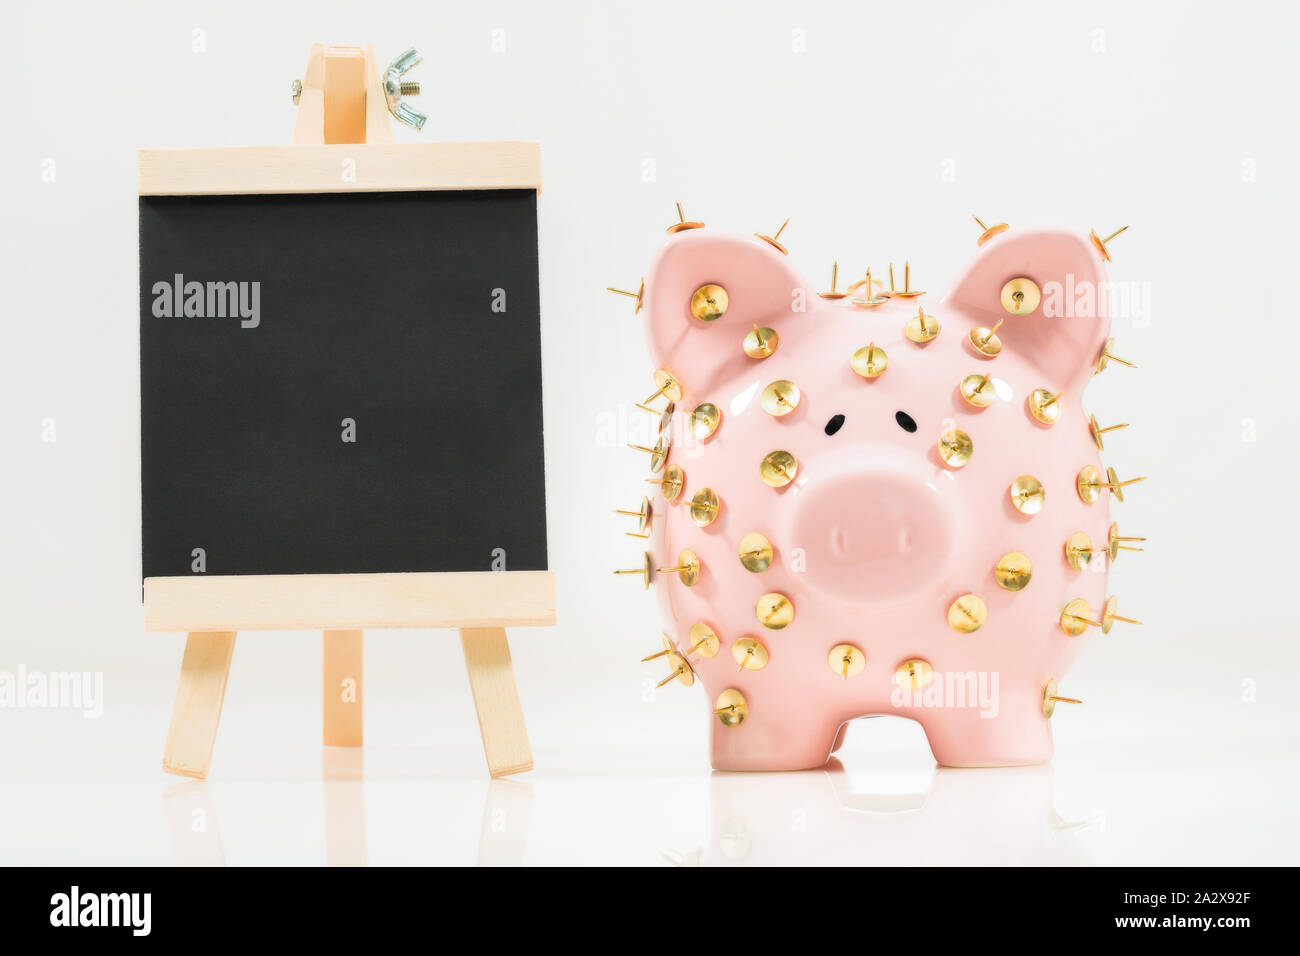 Image conceptuelle illustrant la protection des économies et des investissements montrant une banque de porc rose protégée par des piles de dessin et isolée contre le blanc. Banque D'Images